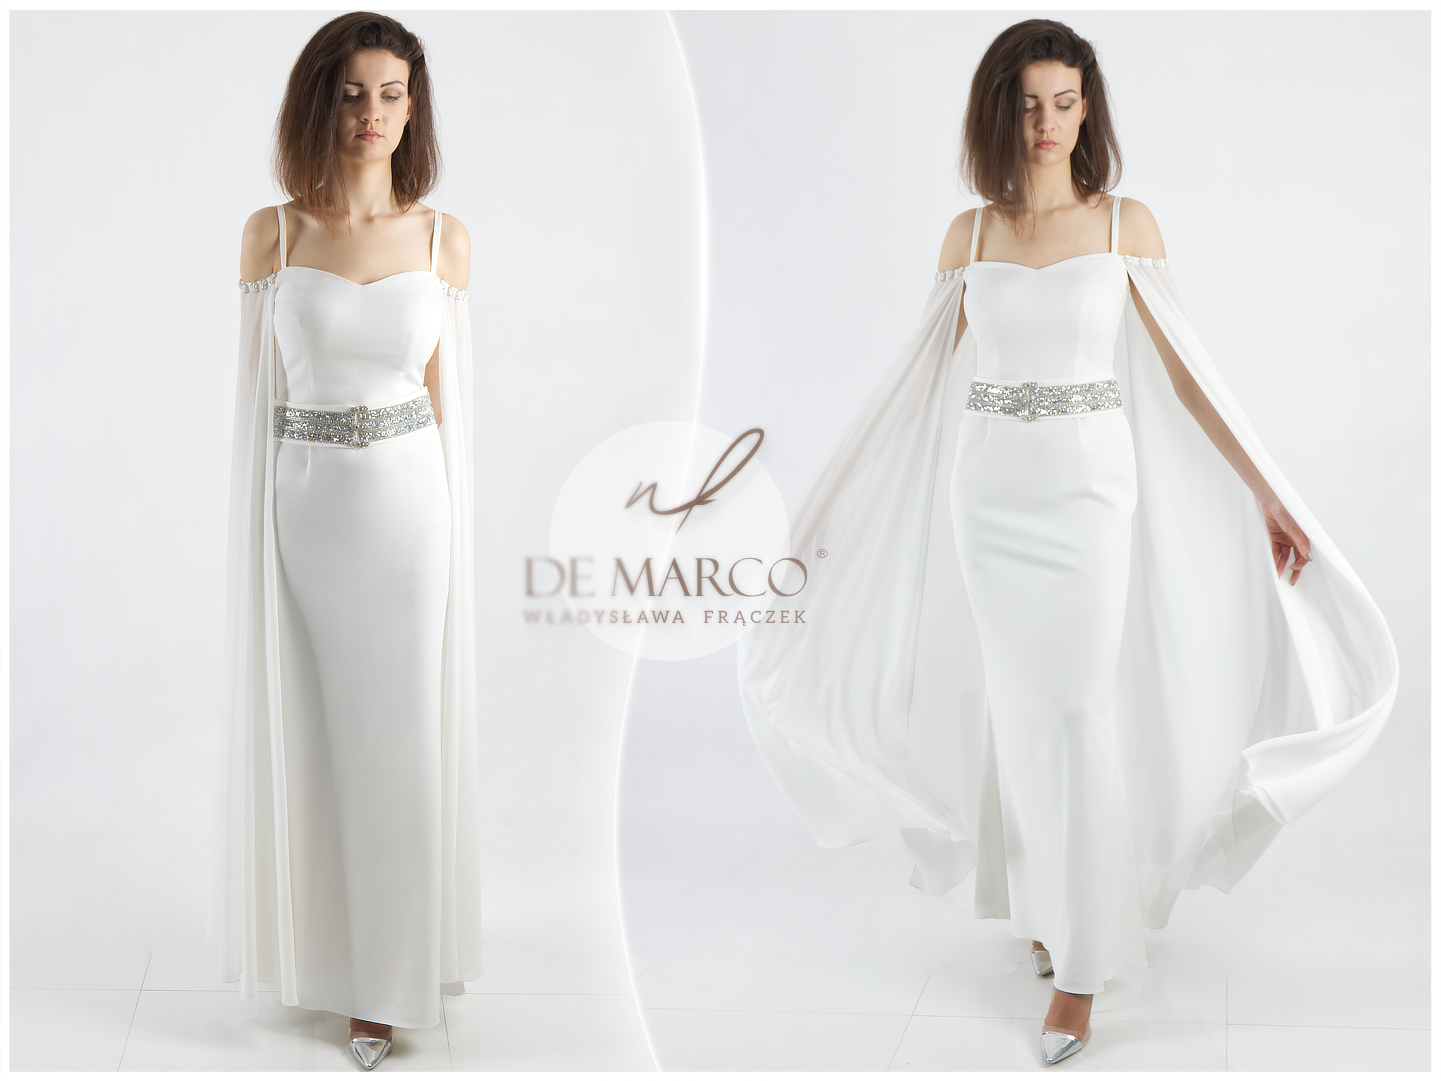 Minimalistyczne suknie ślubne De Marco